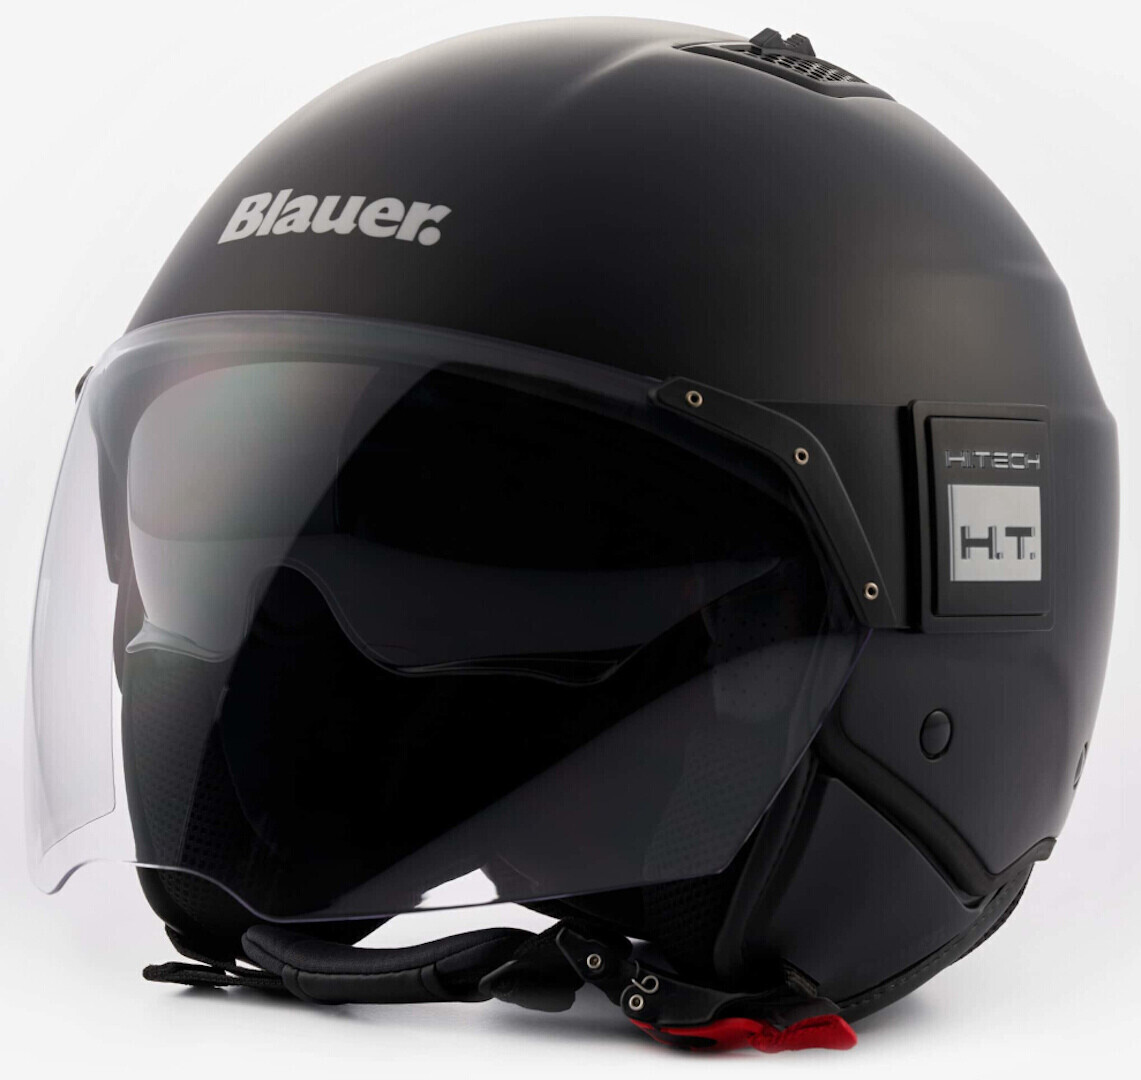 Photos - Motorcycle Helmet Blauer. Blauer HT BET Monochrome black